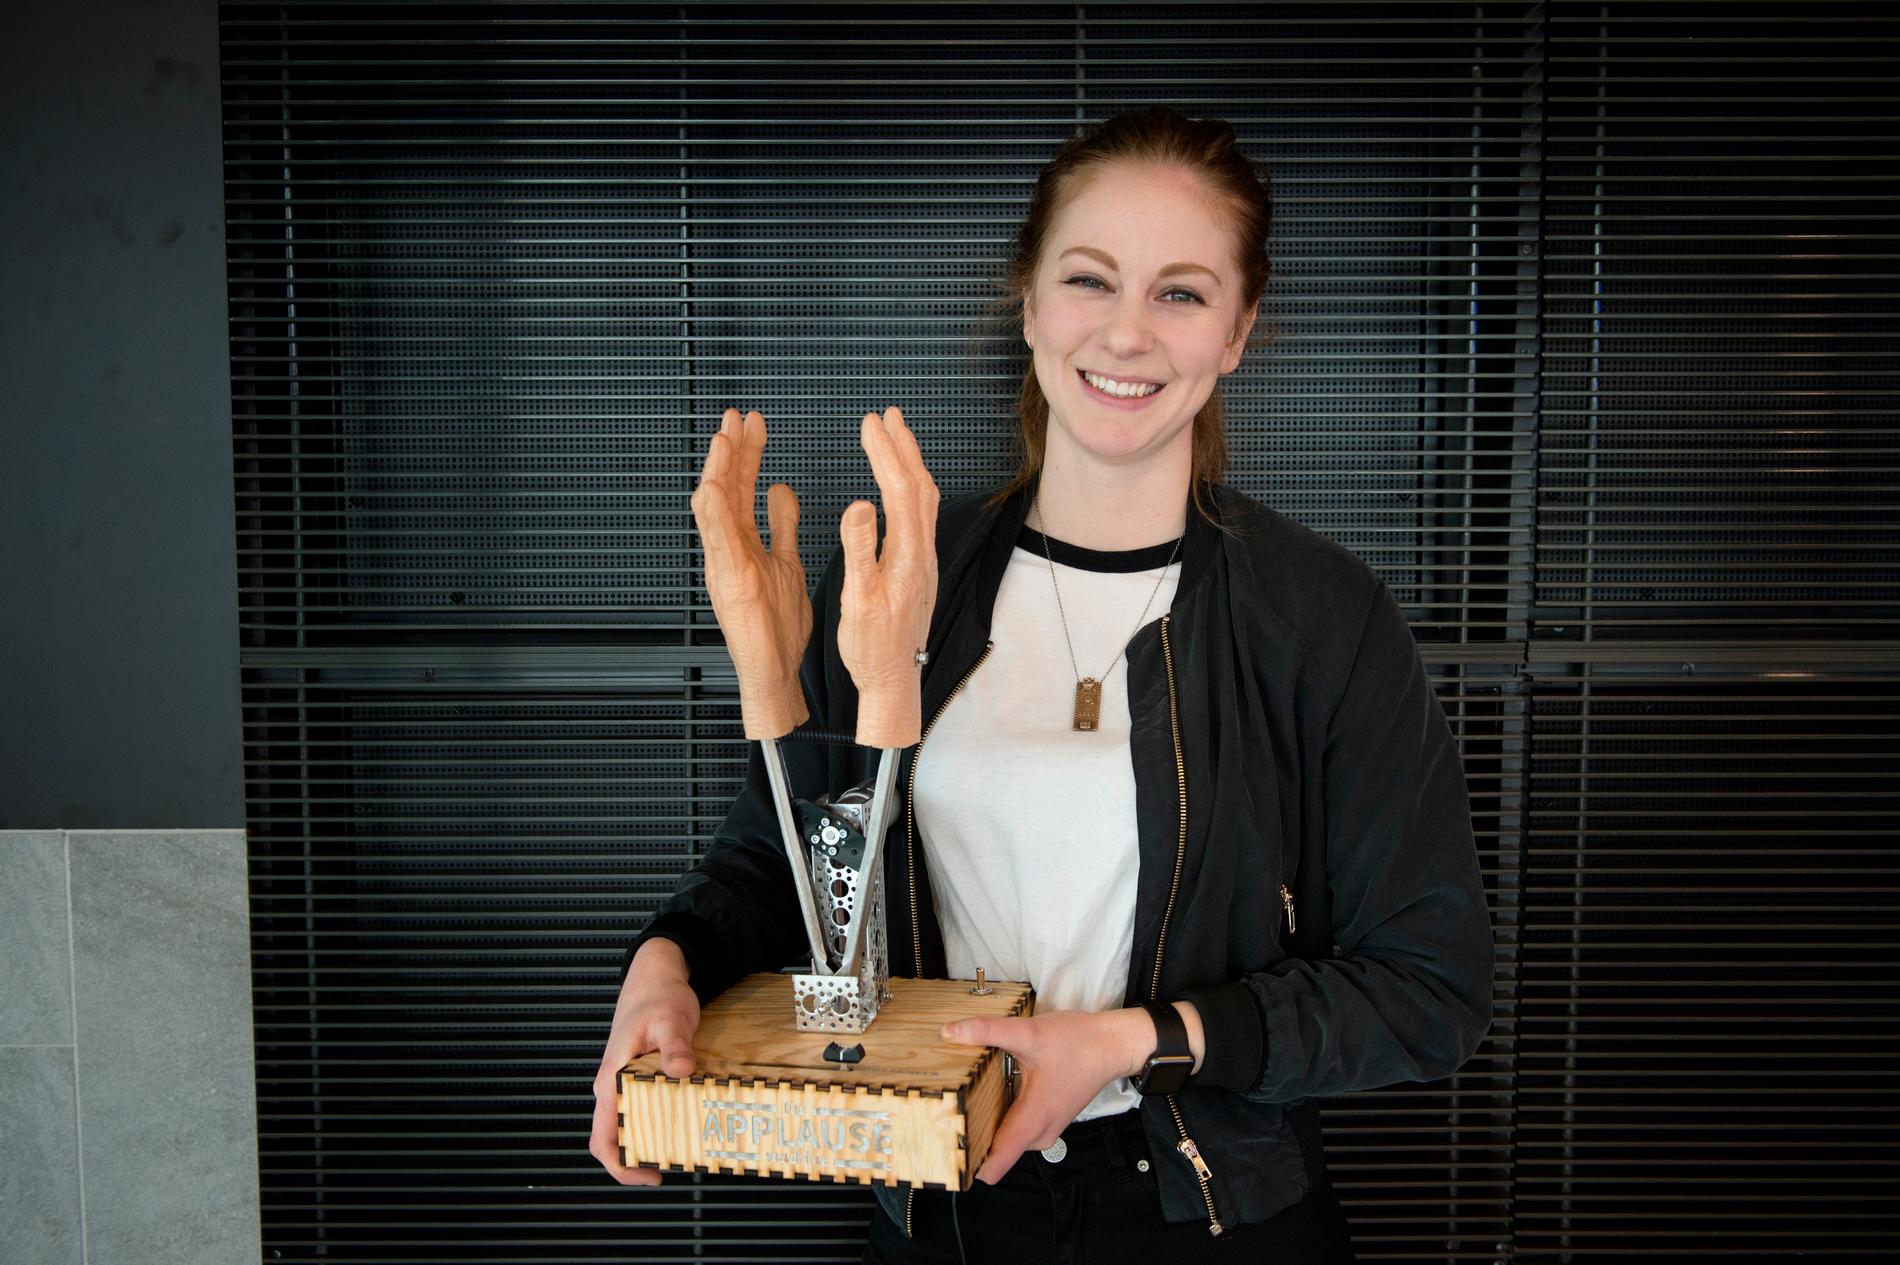 Simone Giertz är en svensk uppfinnare som demonstrerar egenkonstruerade mekaniska robotar på Youtube. Nu vill forskare skapa en virtuell personlighet som liknar henne. Arkivbild.